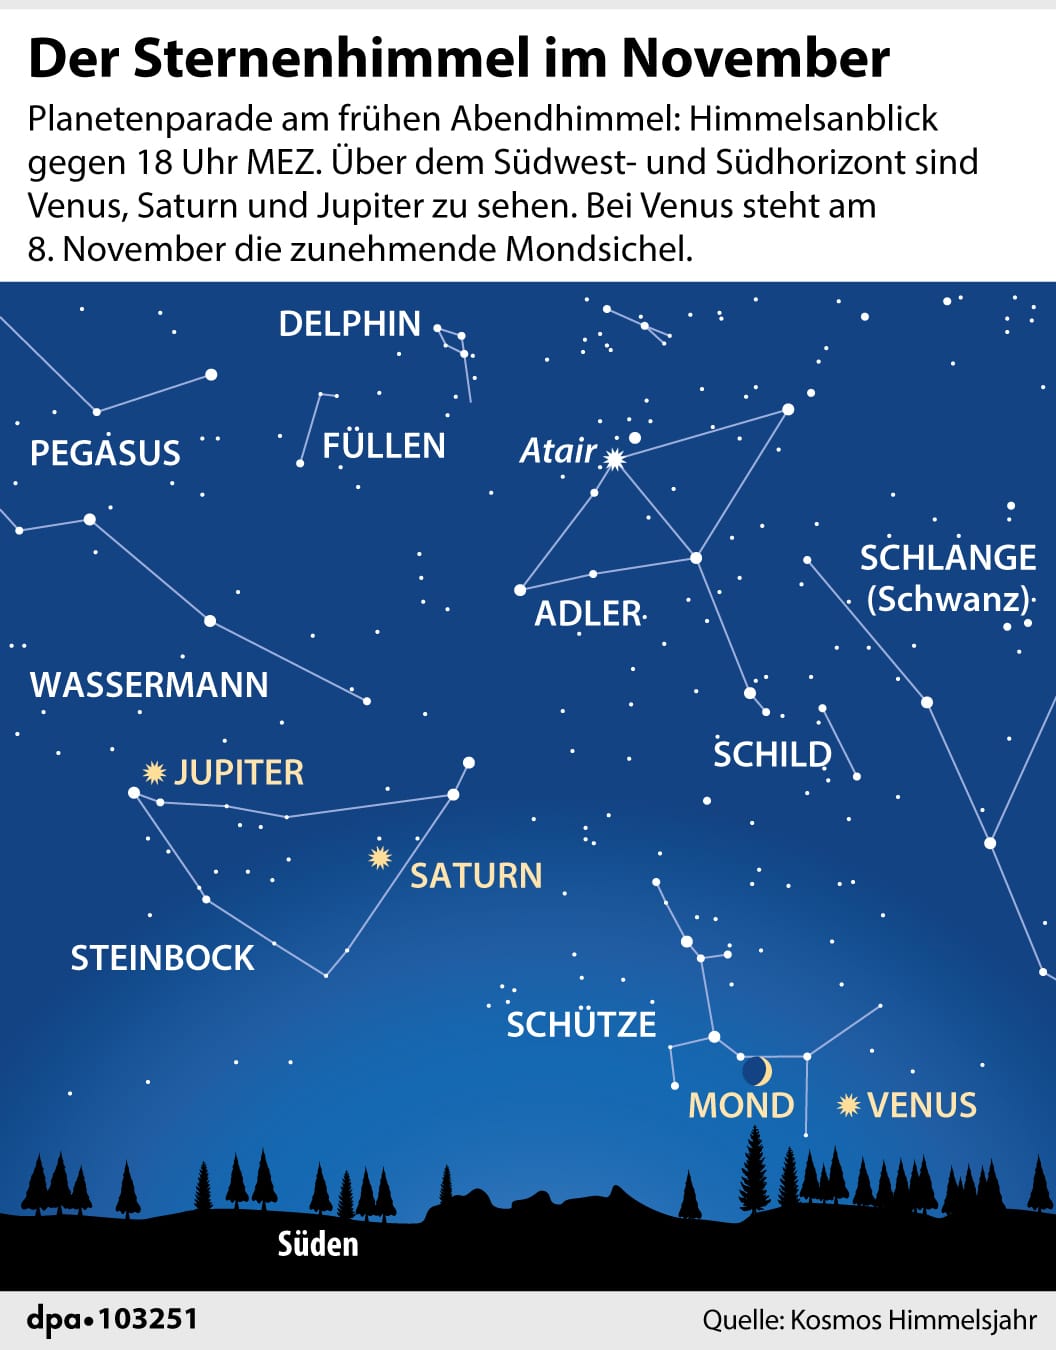 Himmelsanblick im November: So zeigt sich der Sternenhimmel im vorletzten Monat des Jahres.